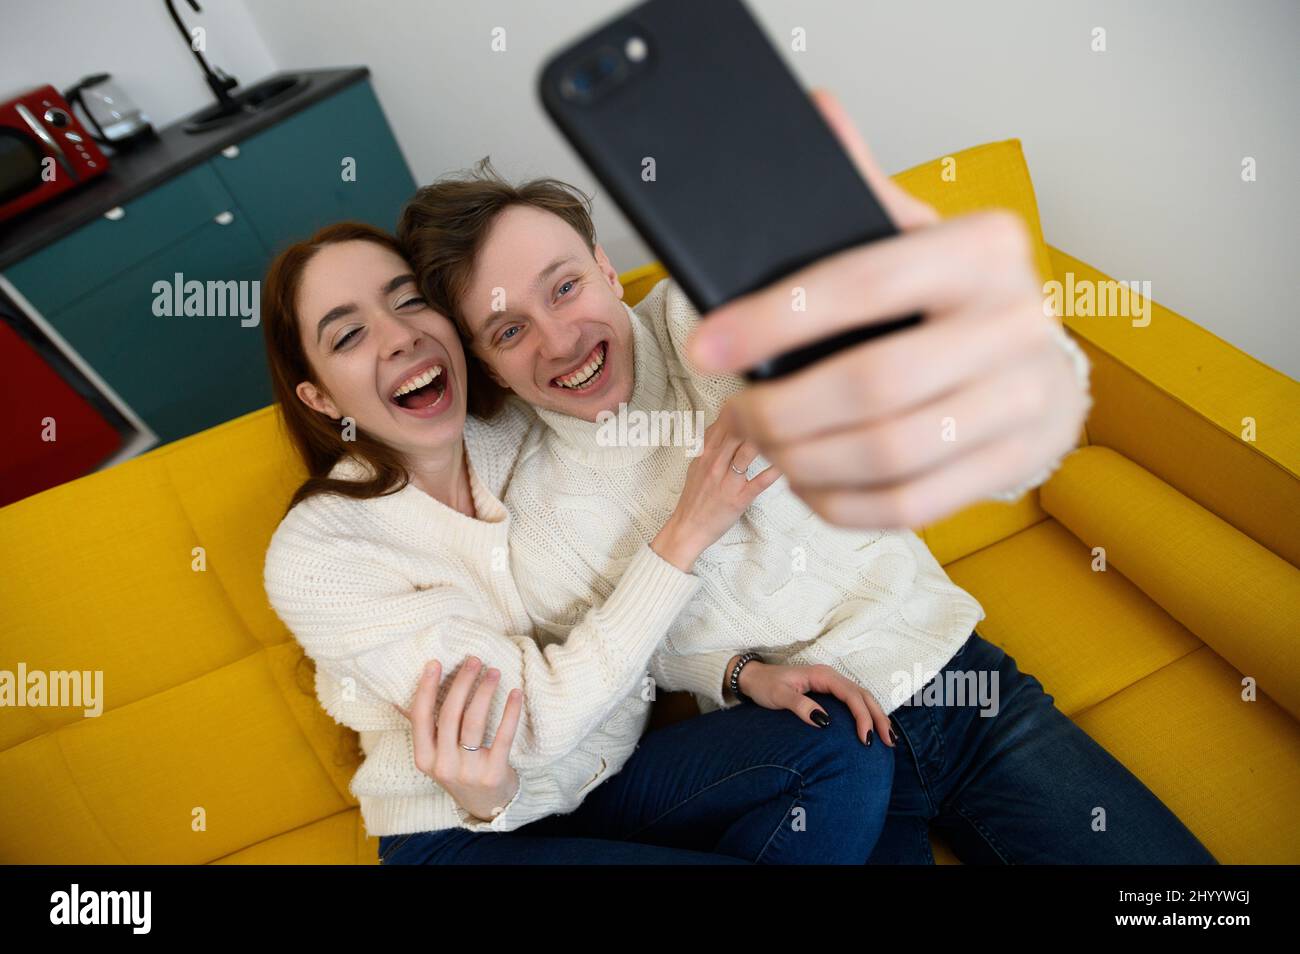 un jeune couple marié à la maison. Ils s'assoient sur le canapé et prennent des selfies Banque D'Images